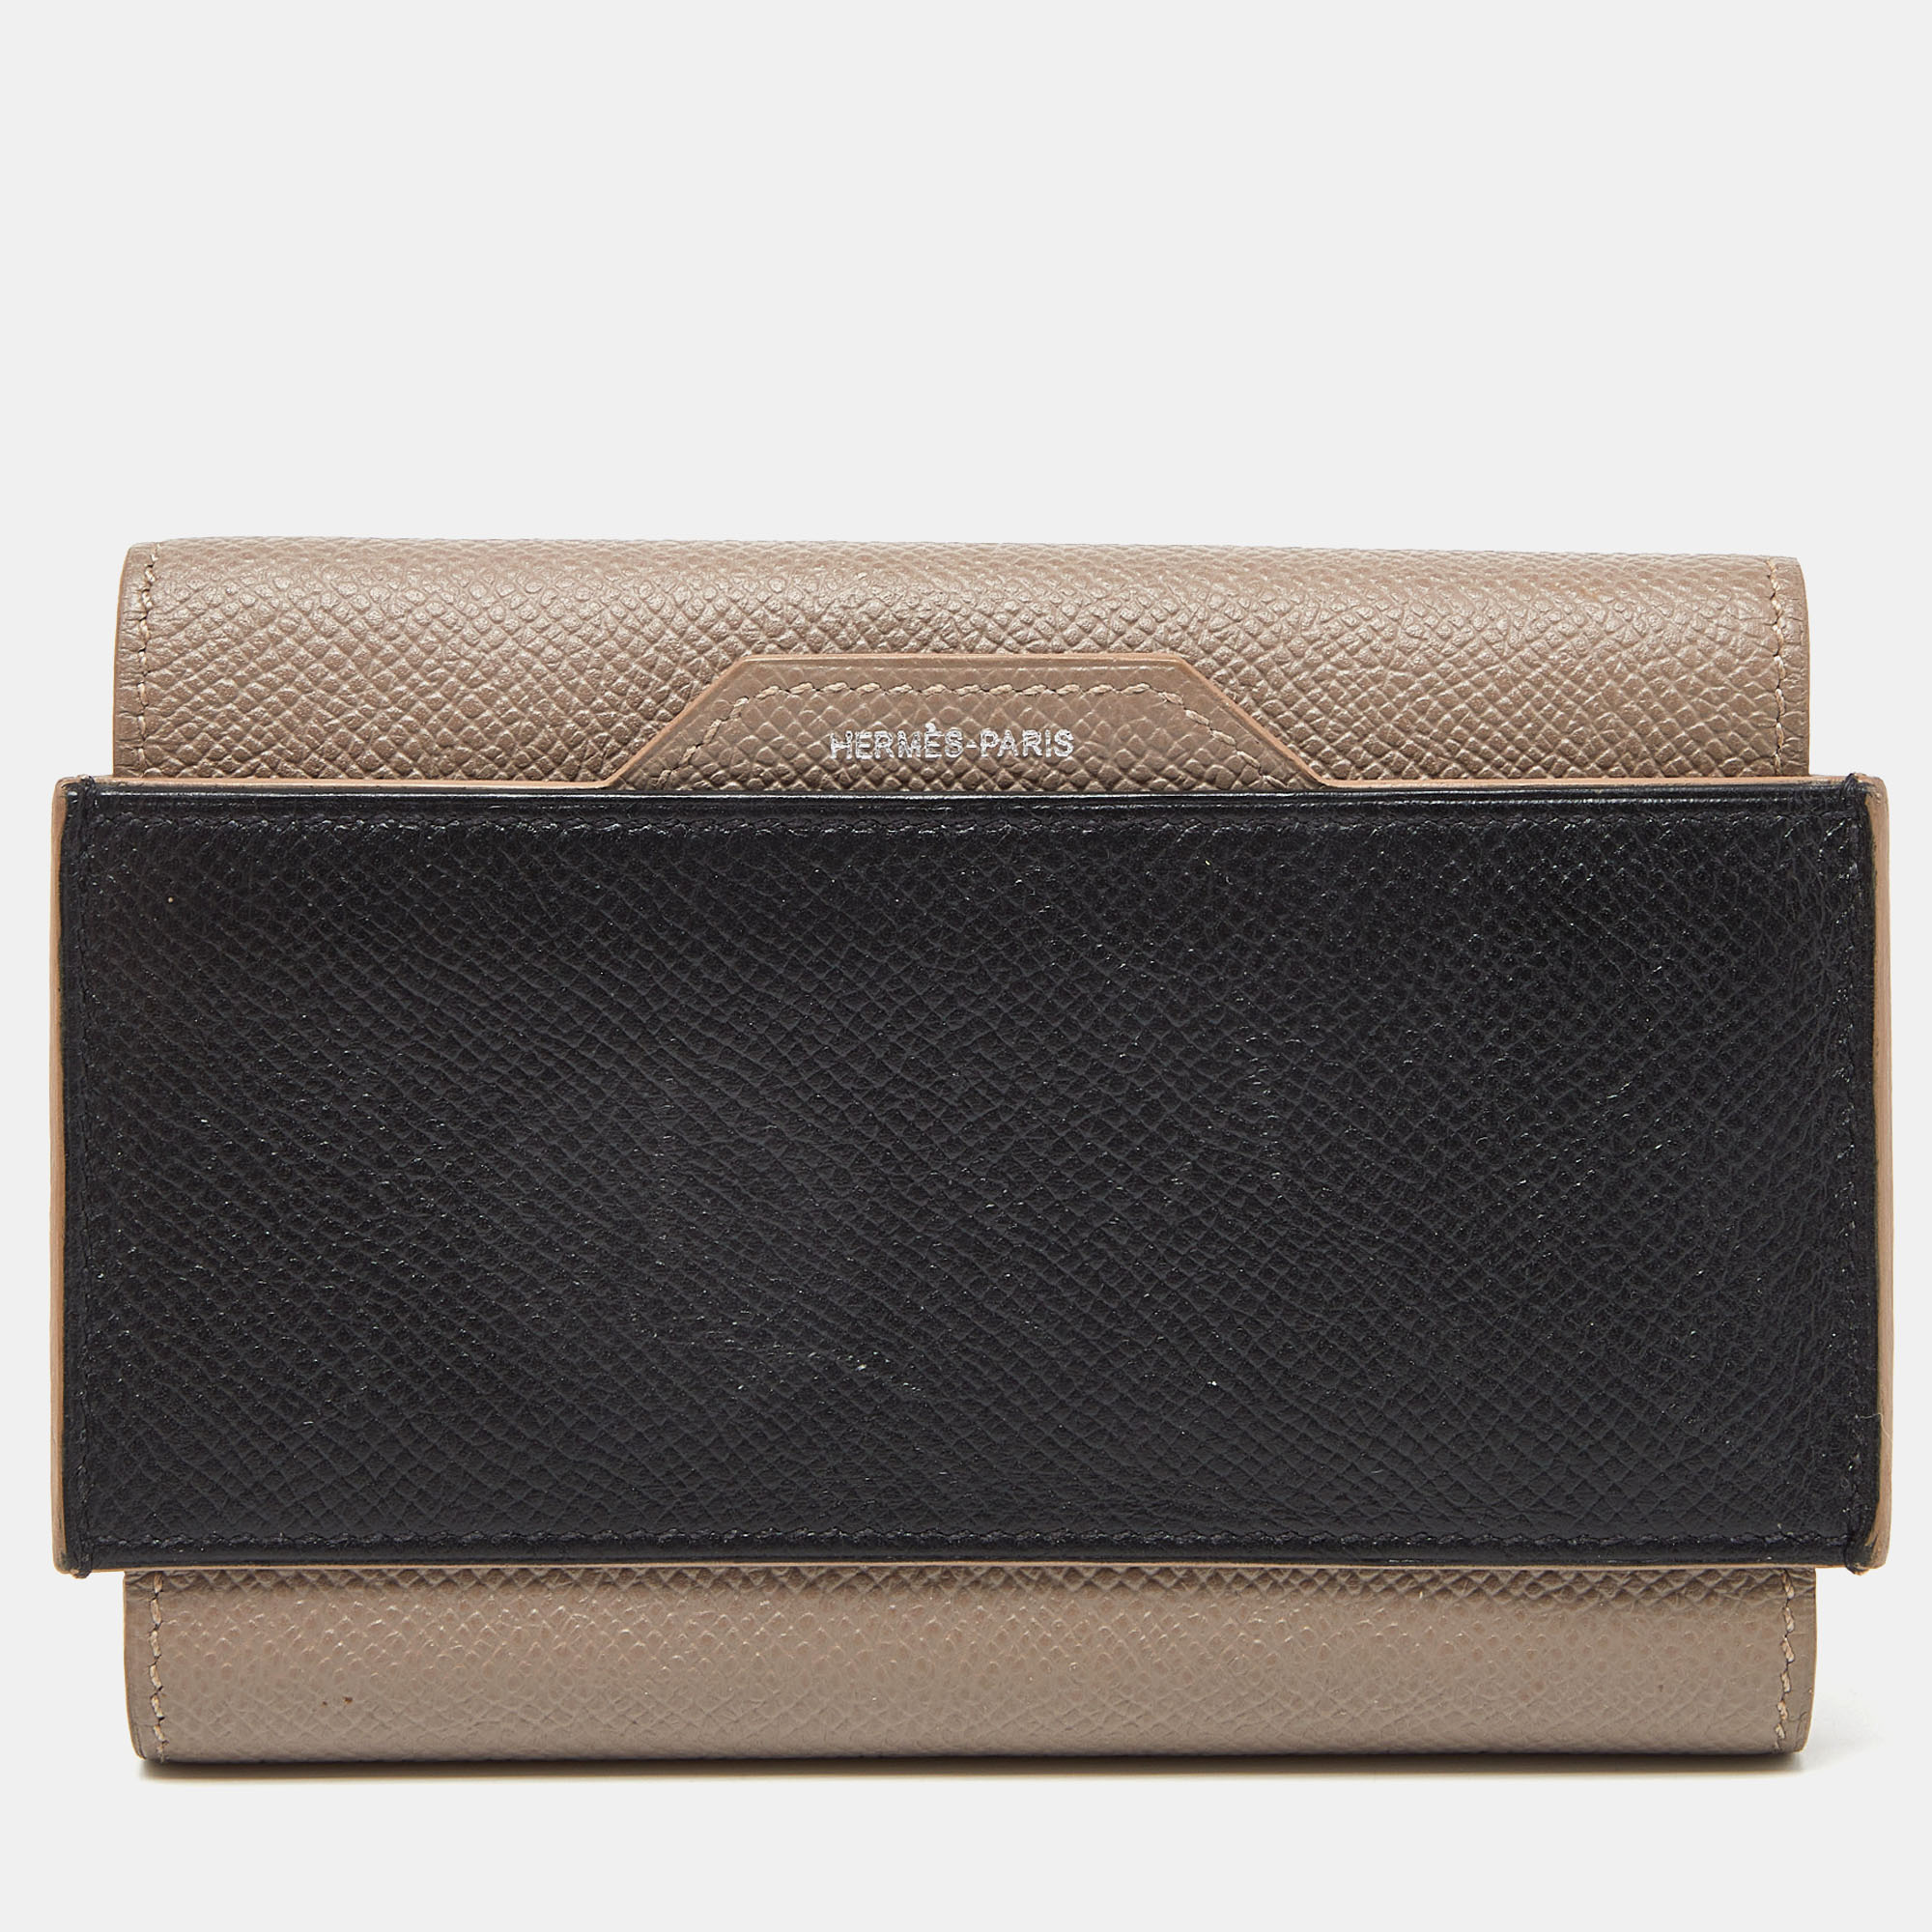 

Hermès Etain/Black Epsom Leather Passant Compact Wallet, Beige